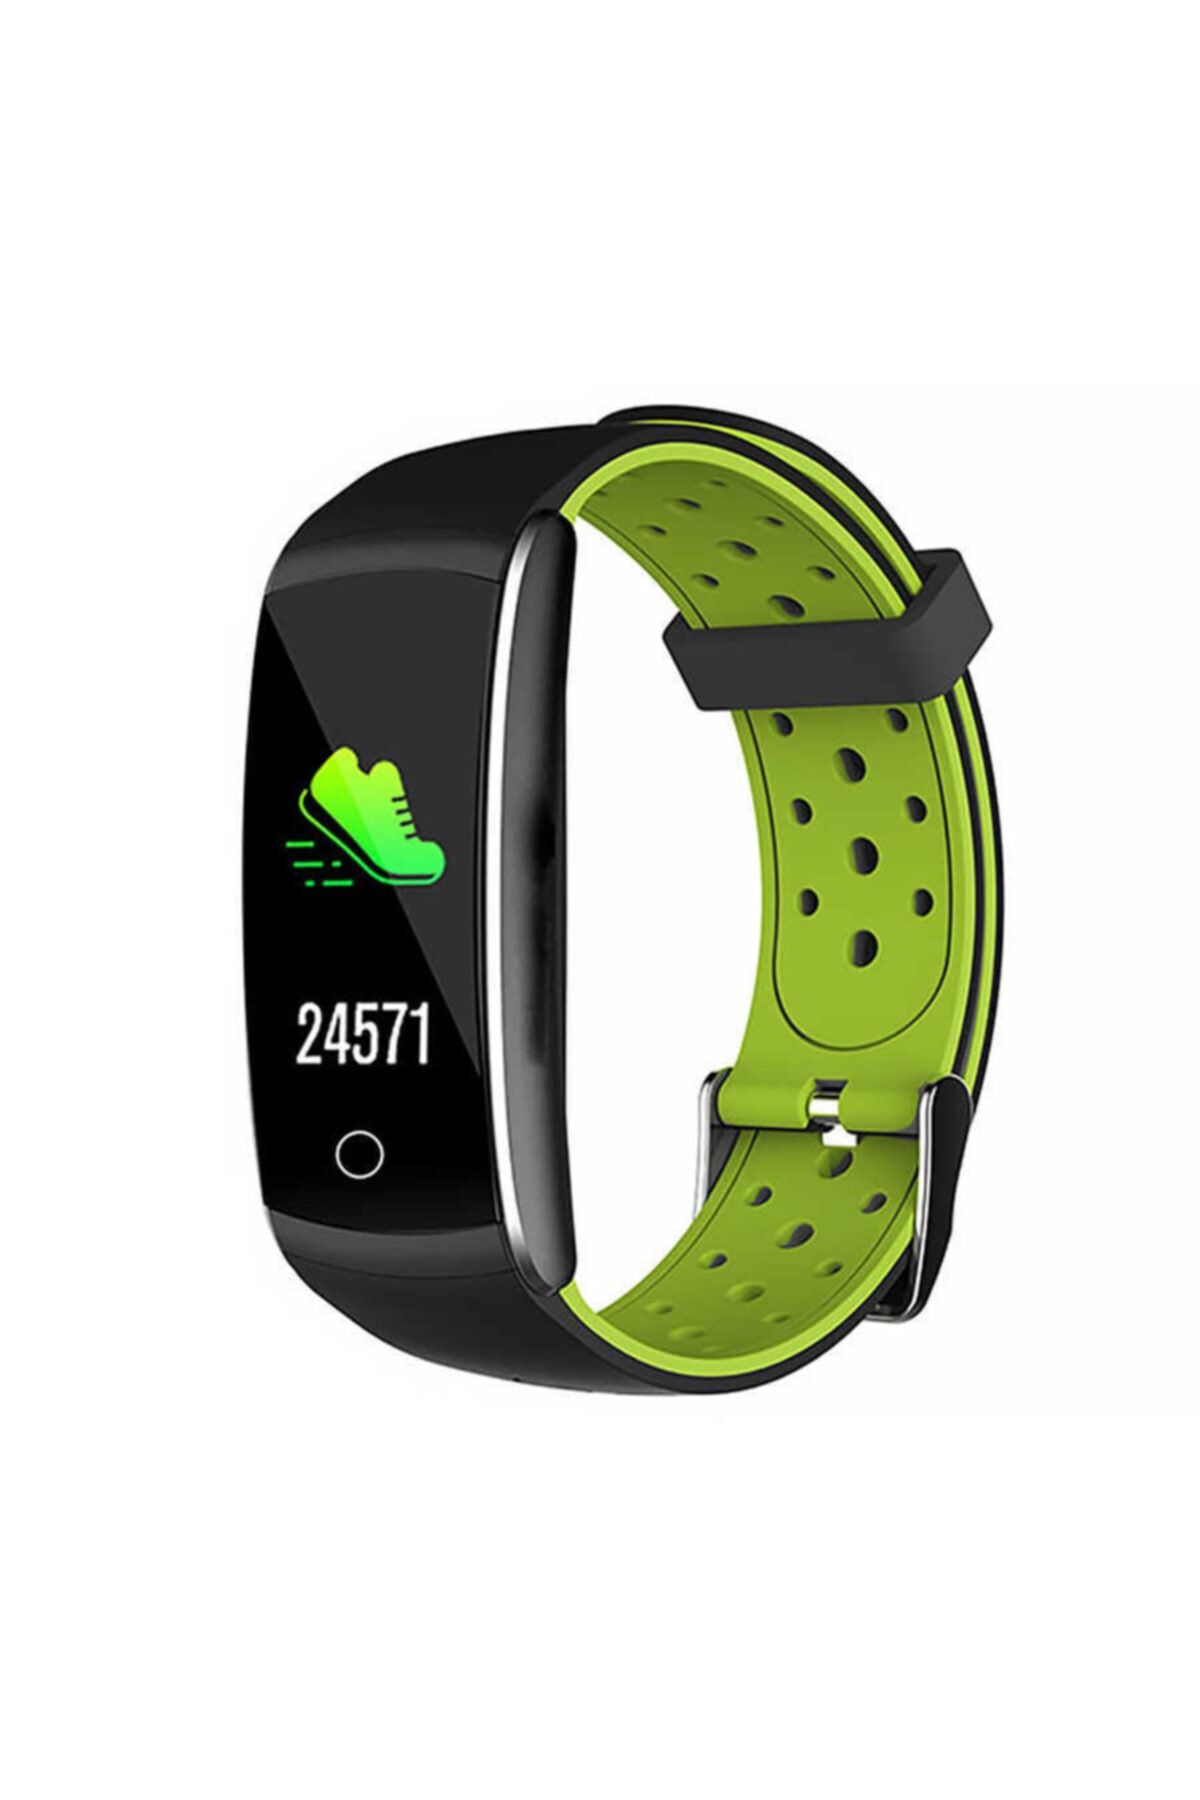 Everest Unisex Yeşil Siyah Akıllı Bilekli Saat Ever Fit W49 Android ıos Smart Watch Kalp Atışı Sensörlü